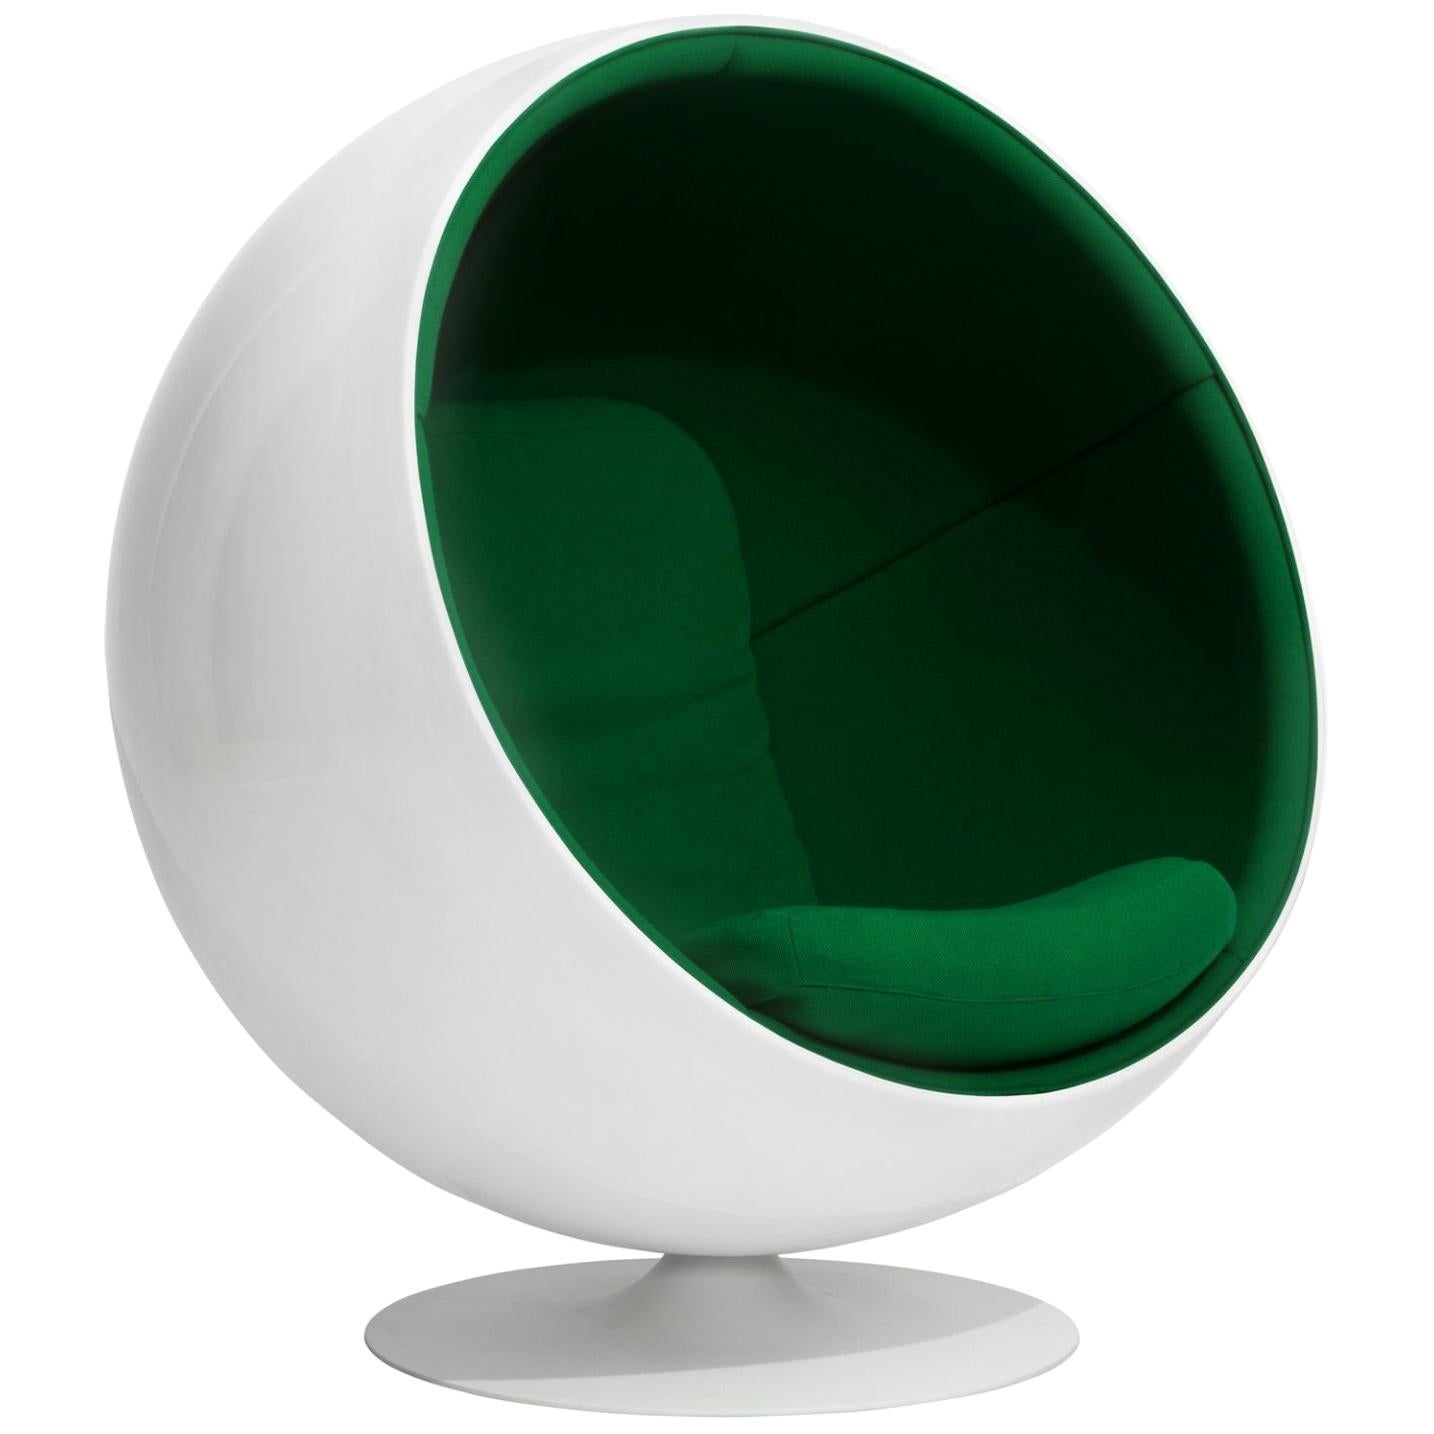 Customizable Iconic Eero Aarnio Swivel Ball Lounge Chair